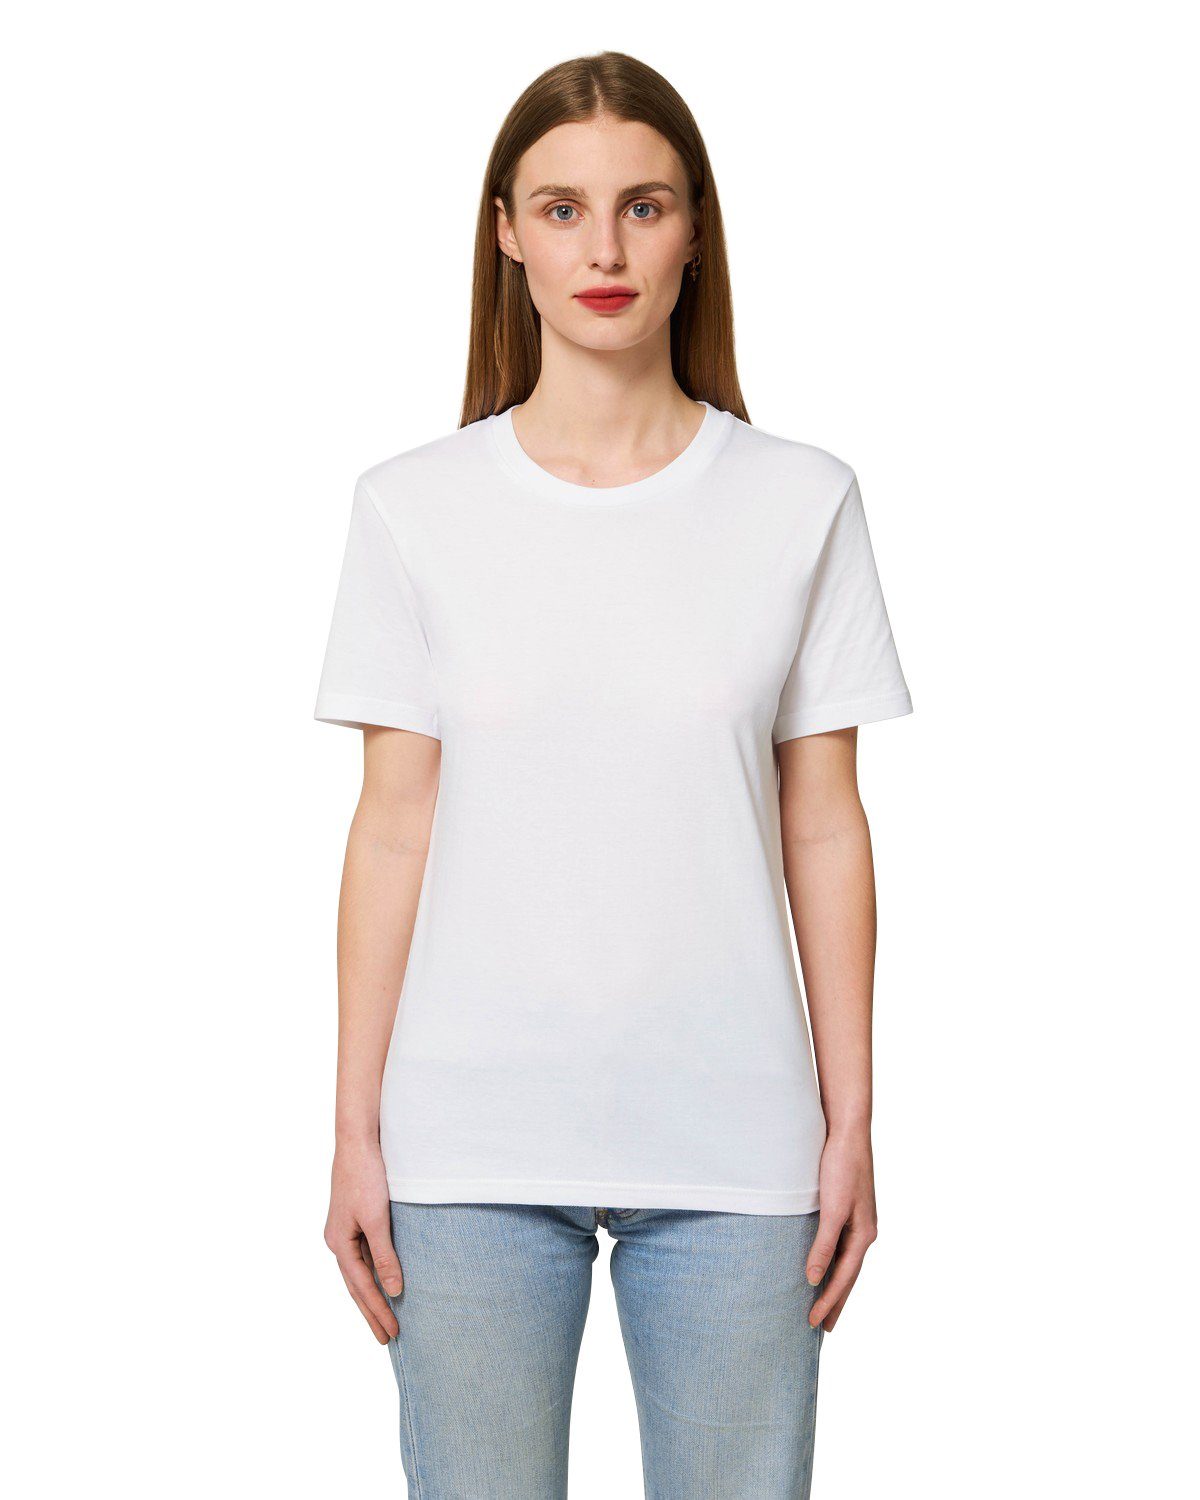 Hilltop T-Shirt Hochwertiges Unisex T-Shirt aus 100% Bio-Baumwolle White